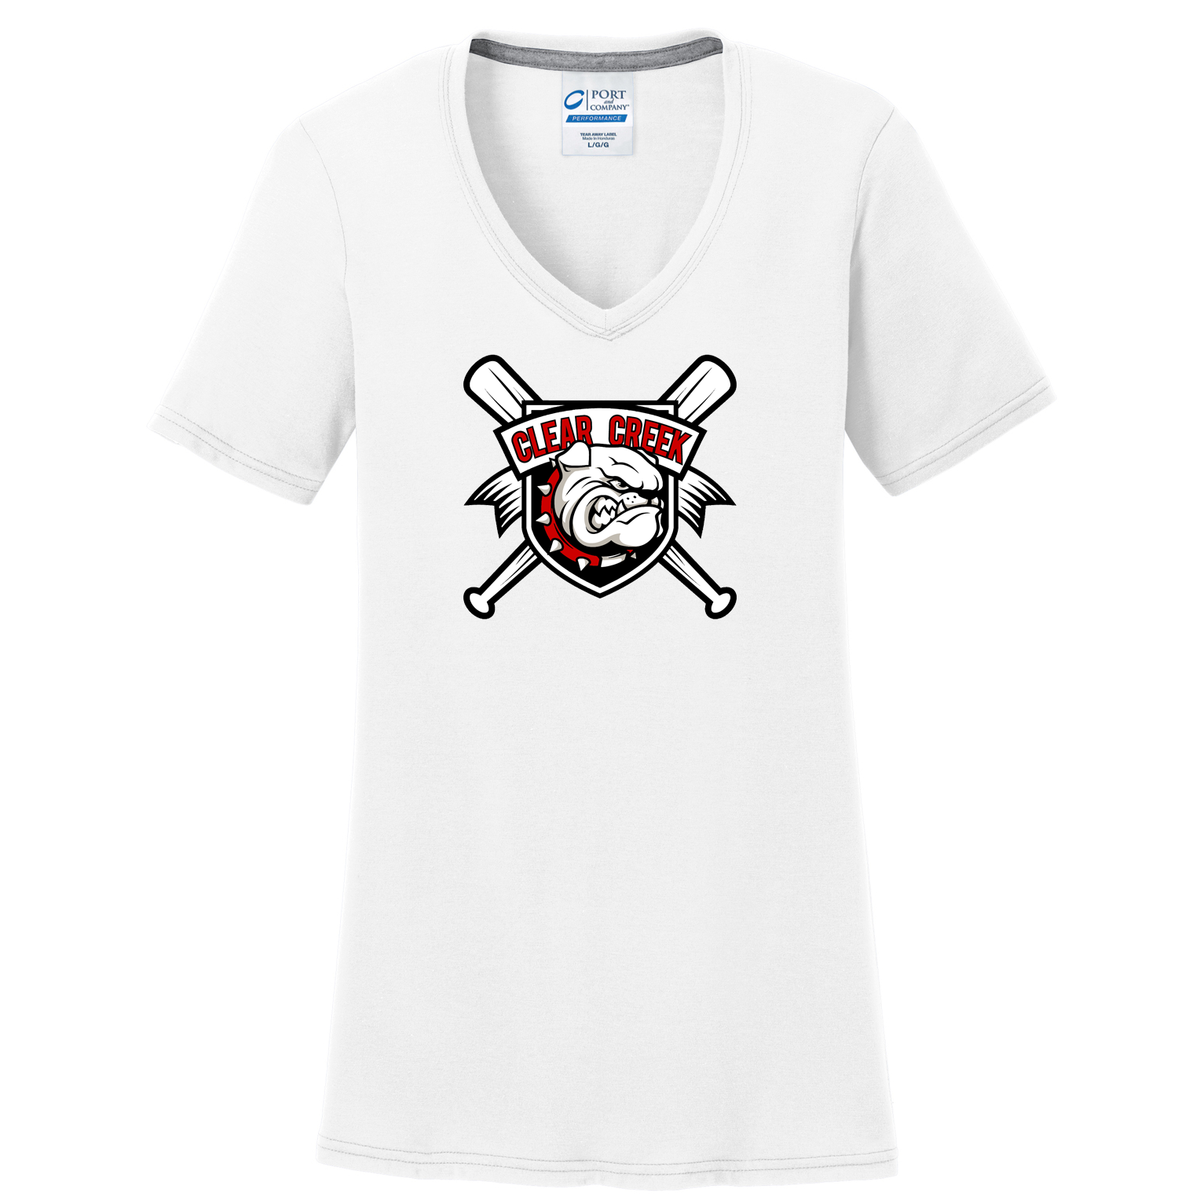 Clear Creek Bulldog Baseball  Women's T-Shirt